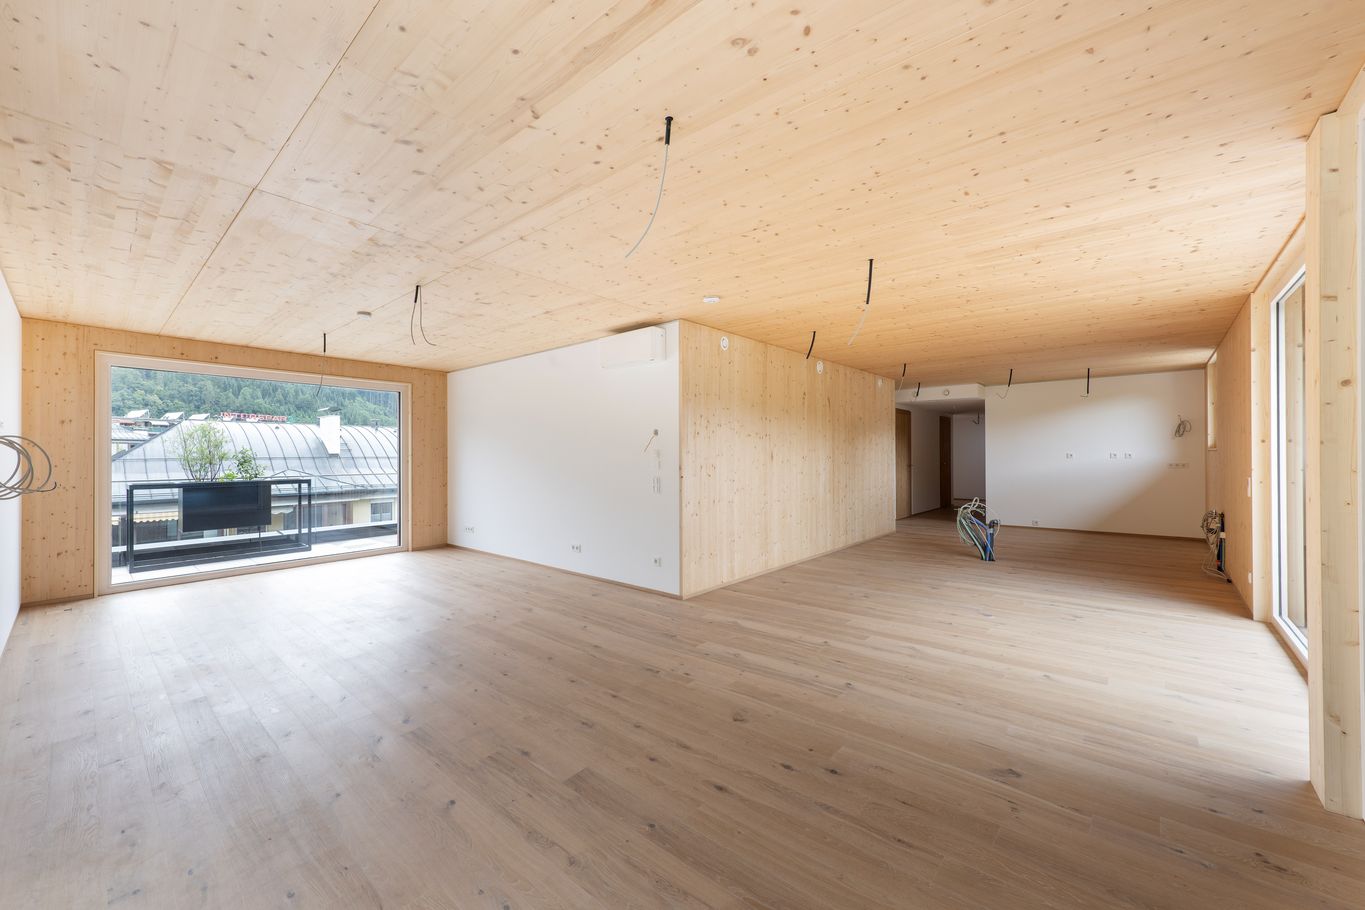 Vue de l’intérieur avec éléments BBS lamellé croisé en qualité habitat © Foto Gretter / Unterberger Immobilien